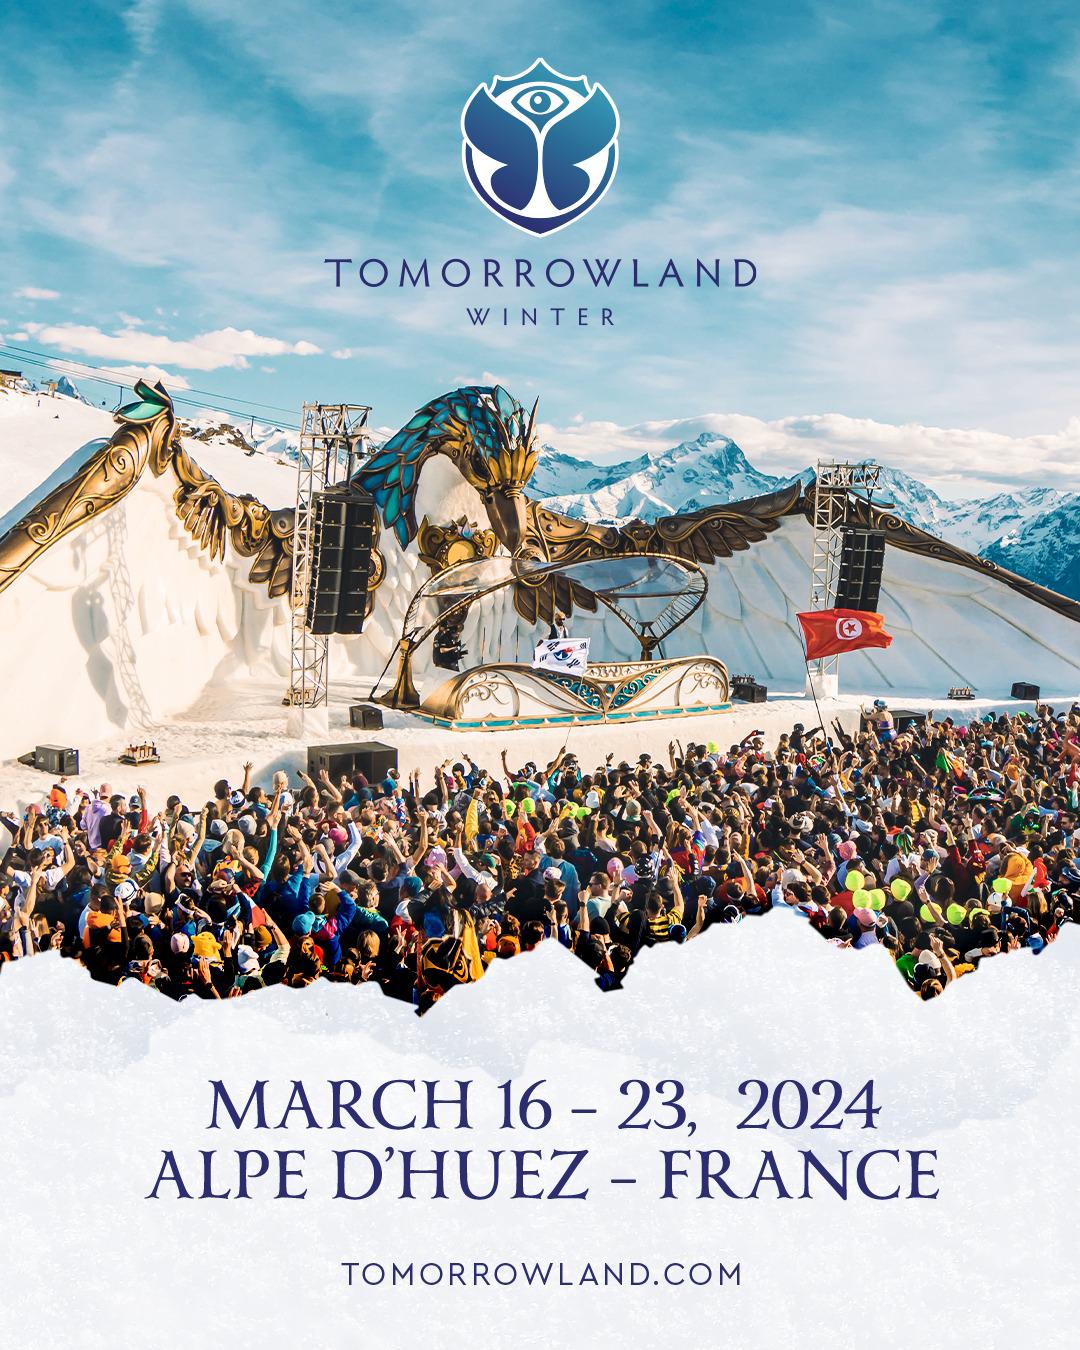 $!Anuncian las fechas del ‘Tomorrowland Winter’ en Francia